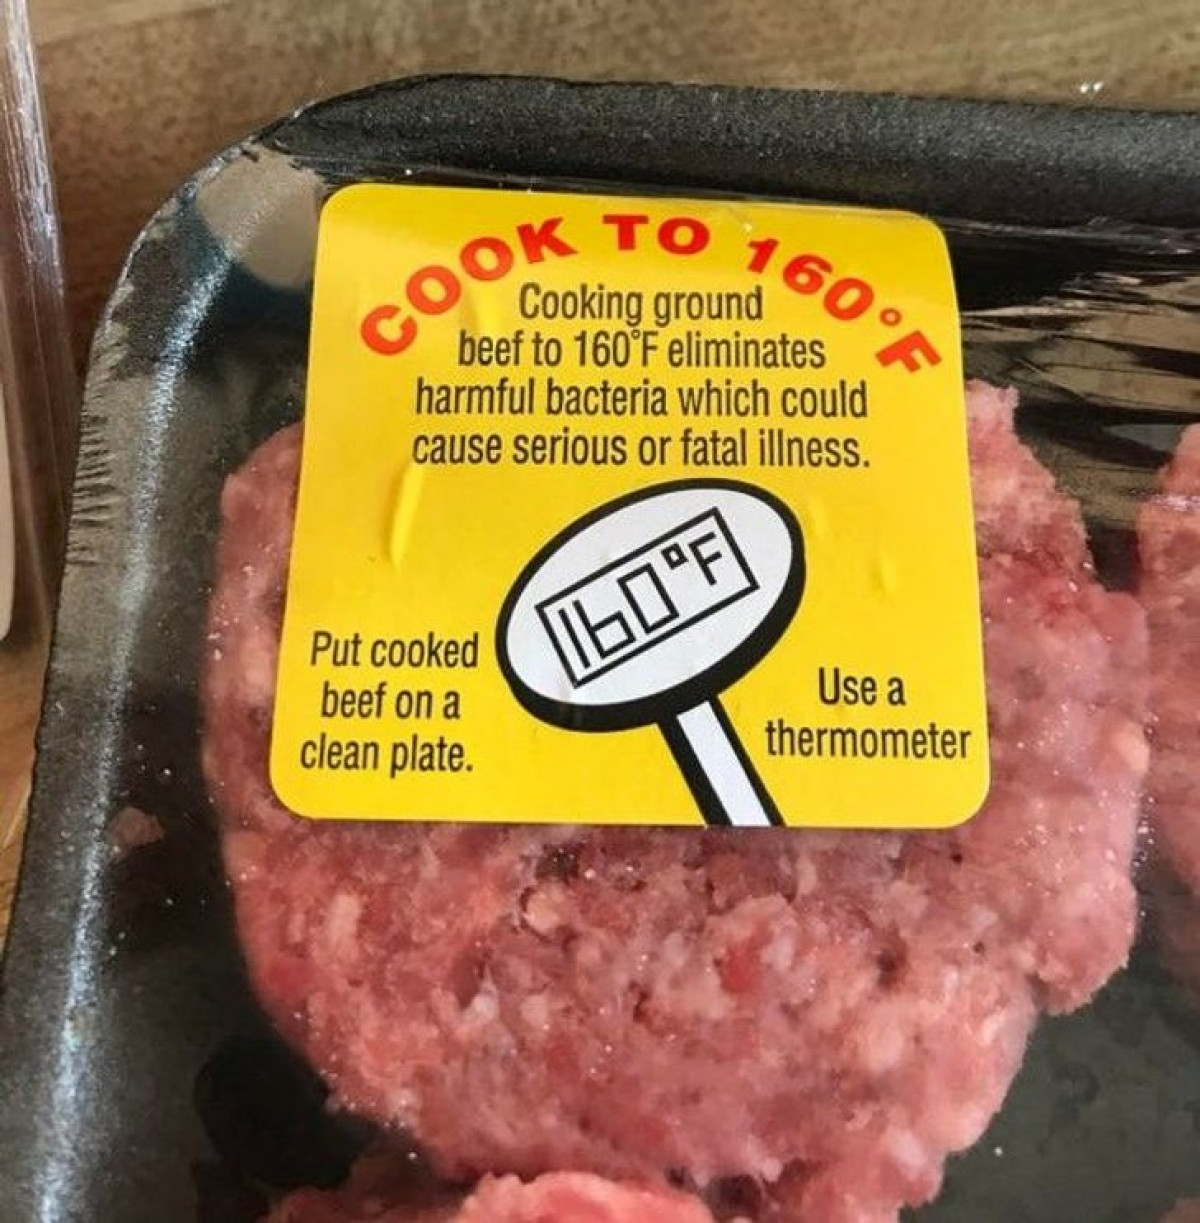 Hộp thịt xay có hướng dẫn sử dụng về nhiệt độ khi nấu nướng.